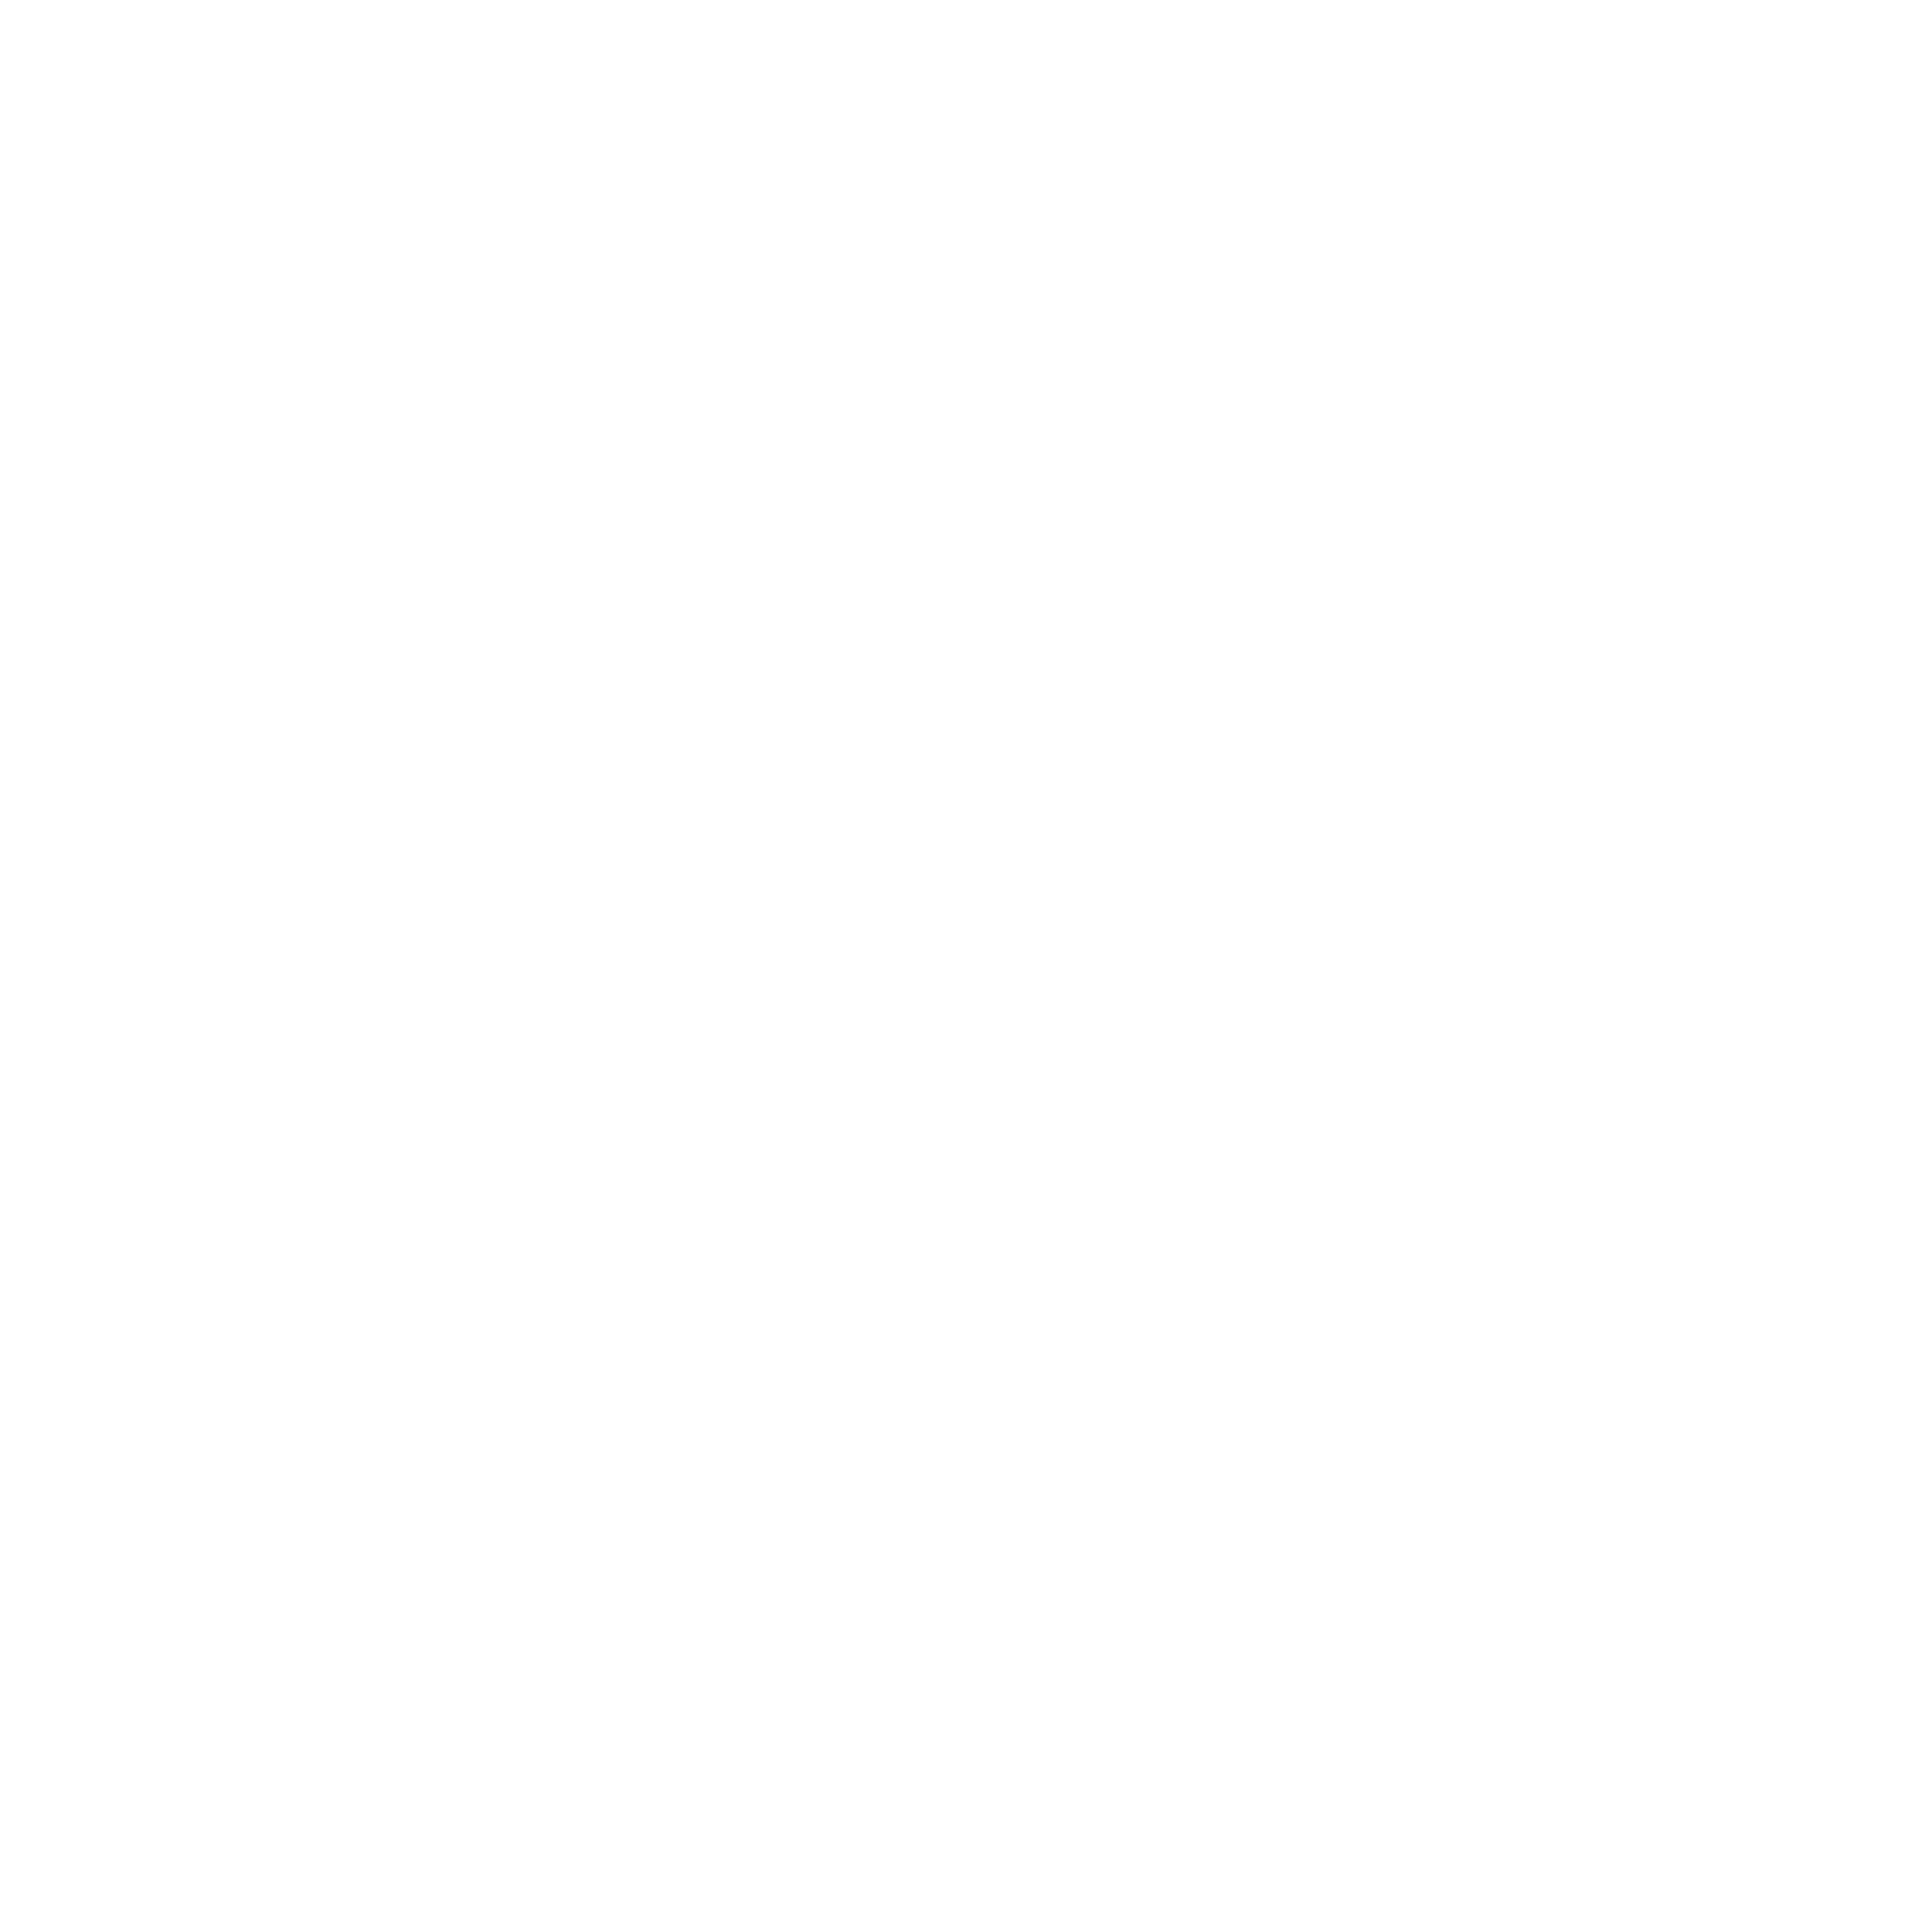 plane pictogram